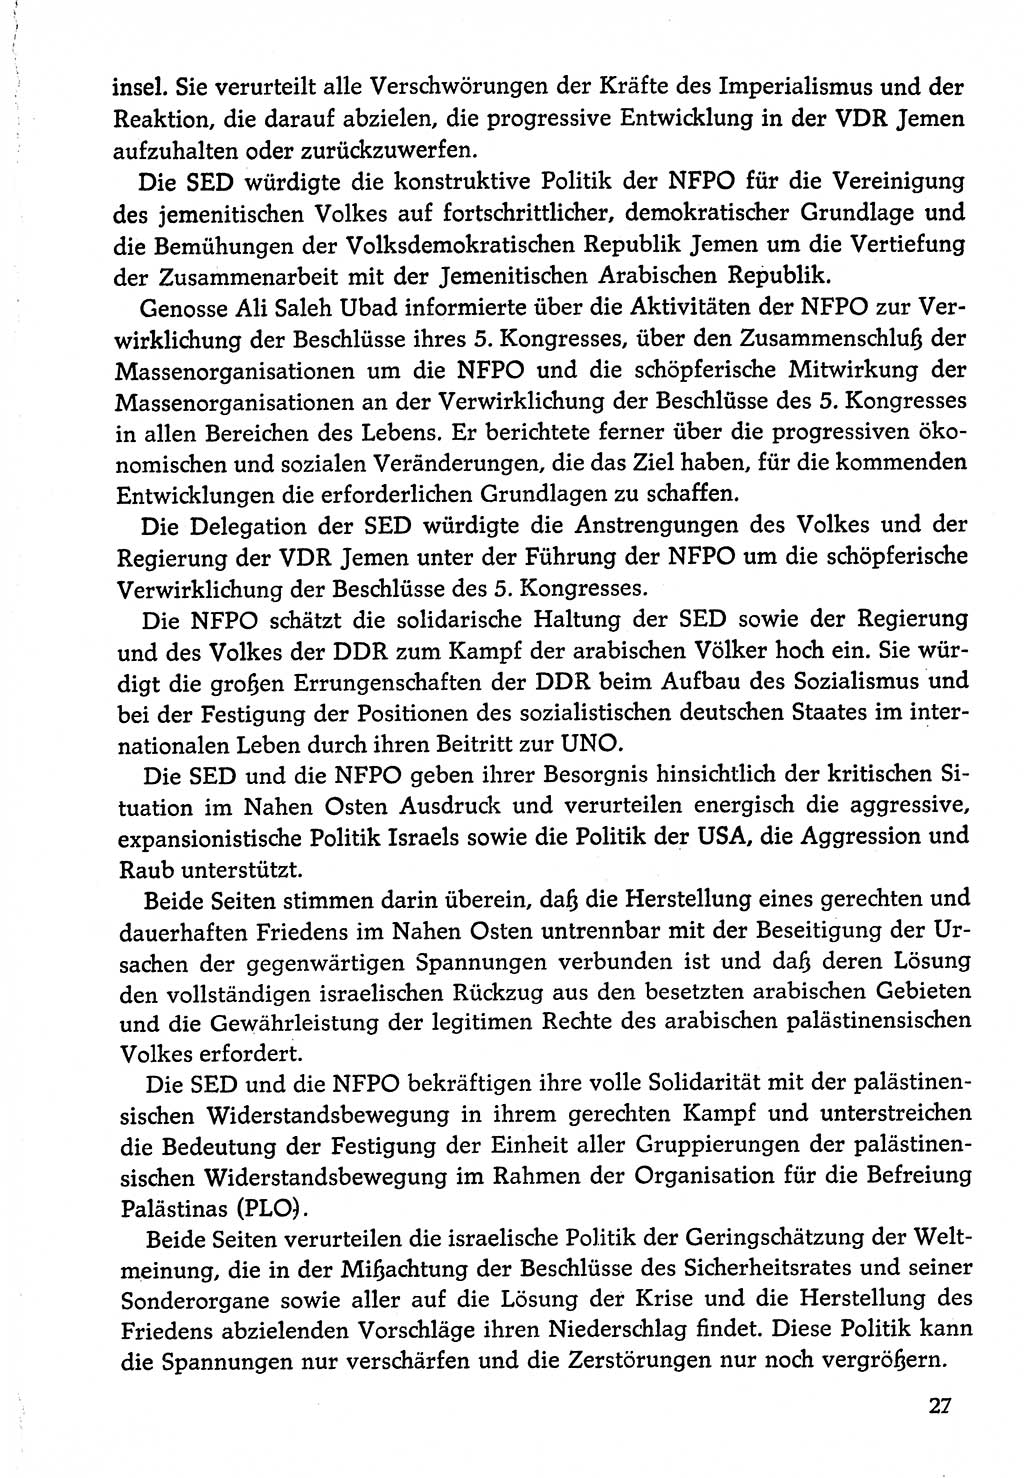 Dokumente der Sozialistischen Einheitspartei Deutschlands (SED) [Deutsche Demokratische Republik (DDR)] 1974-1975, Seite 27 (Dok. SED DDR 1978, Bd. ⅩⅤ, S. 27)